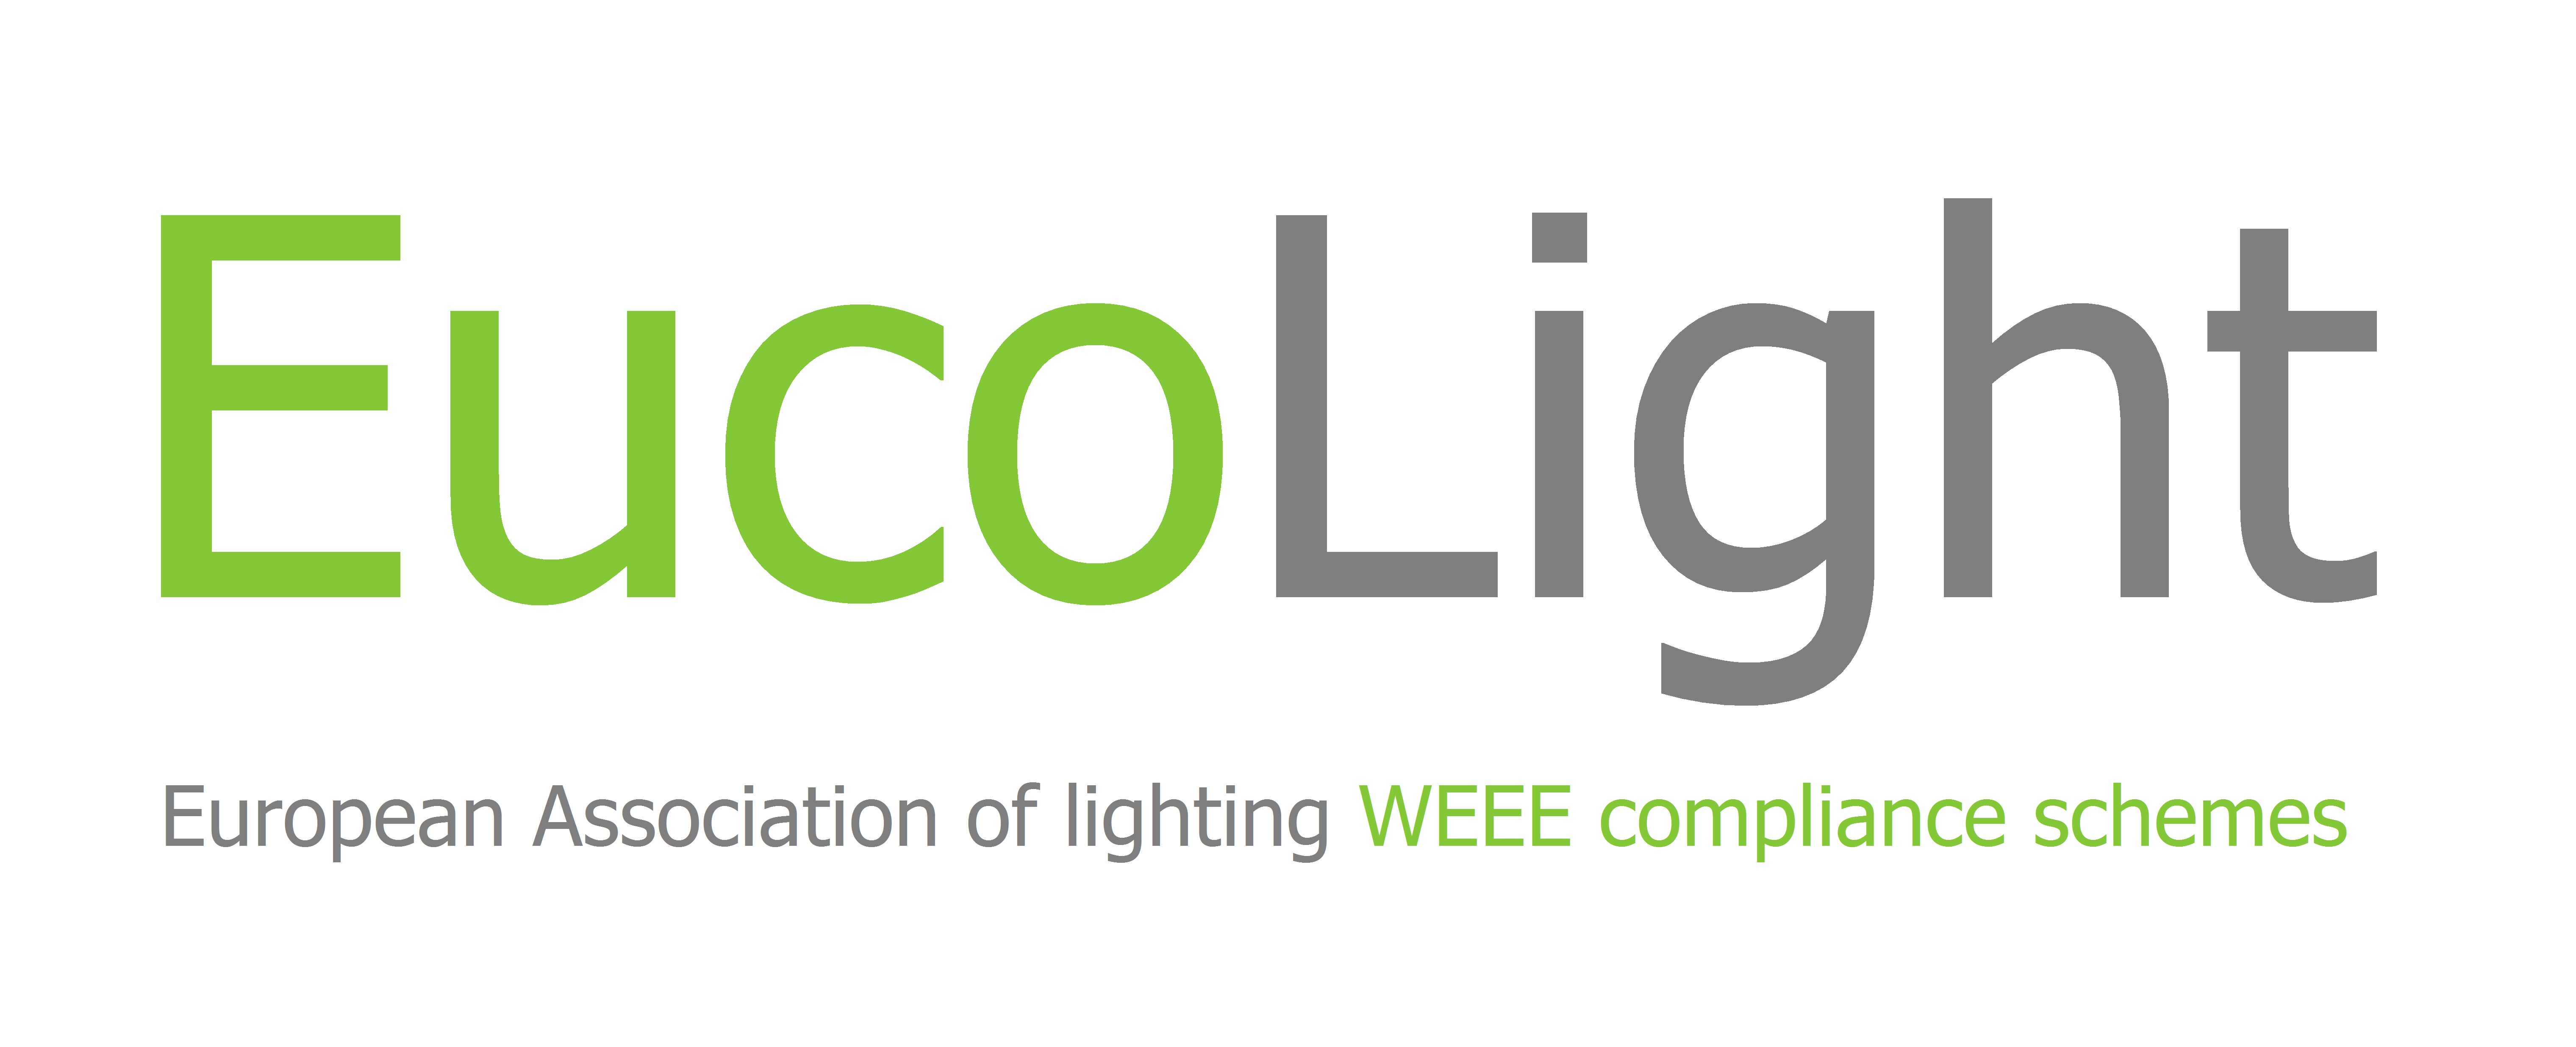 Eucolight-logo-2015.jpg